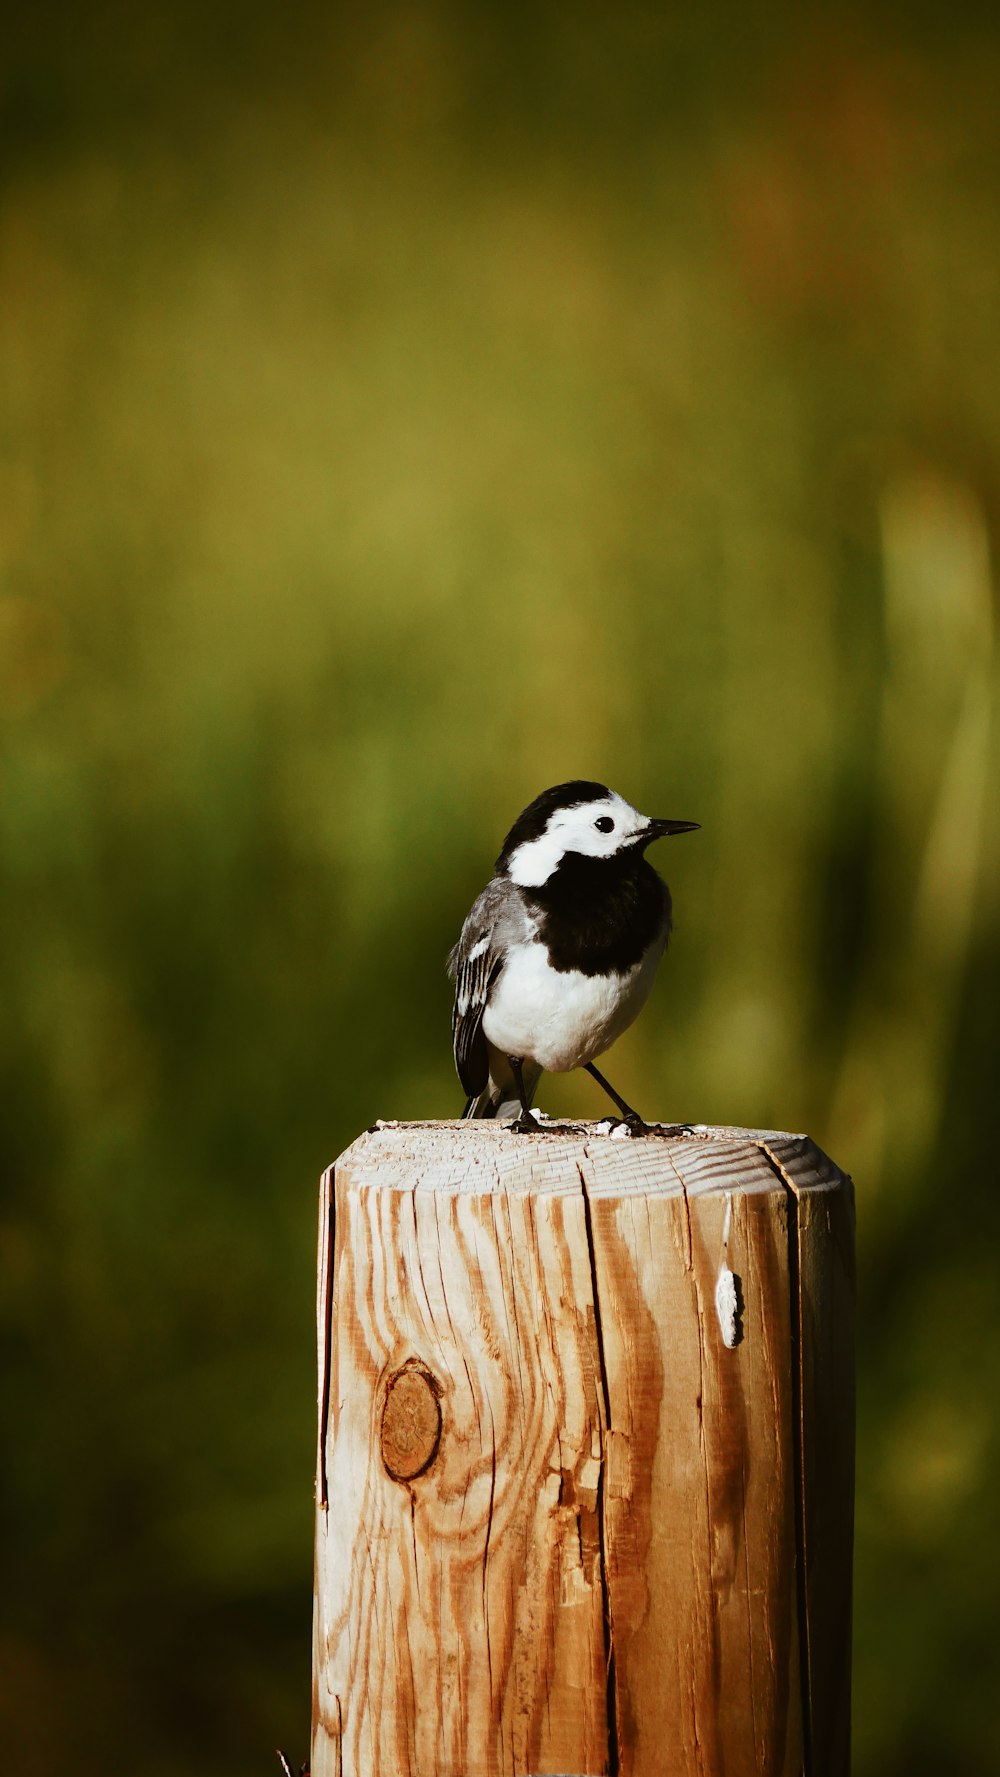 Photographie sélective de mise au point d’un oiseau noir et blanc perché sur un poteau en bois